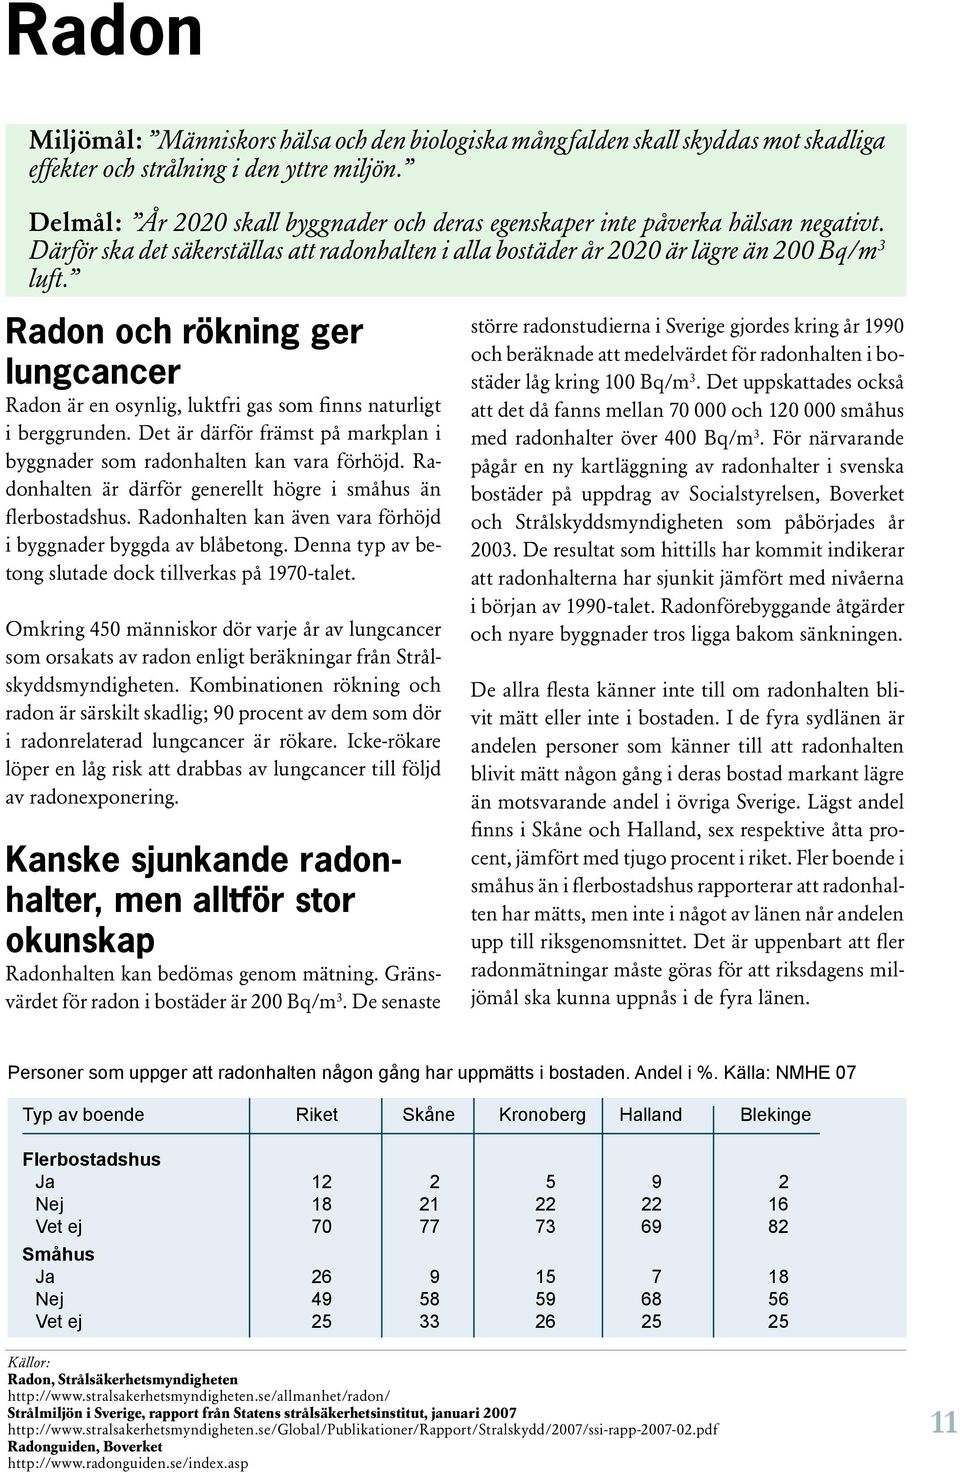 Radon och rökning ger lungcancer Radon är en osynlig, luktfri gas som finns naturligt i berggrunden. Det är därför främst på markplan i byggnader som radonhalten kan vara förhöjd.